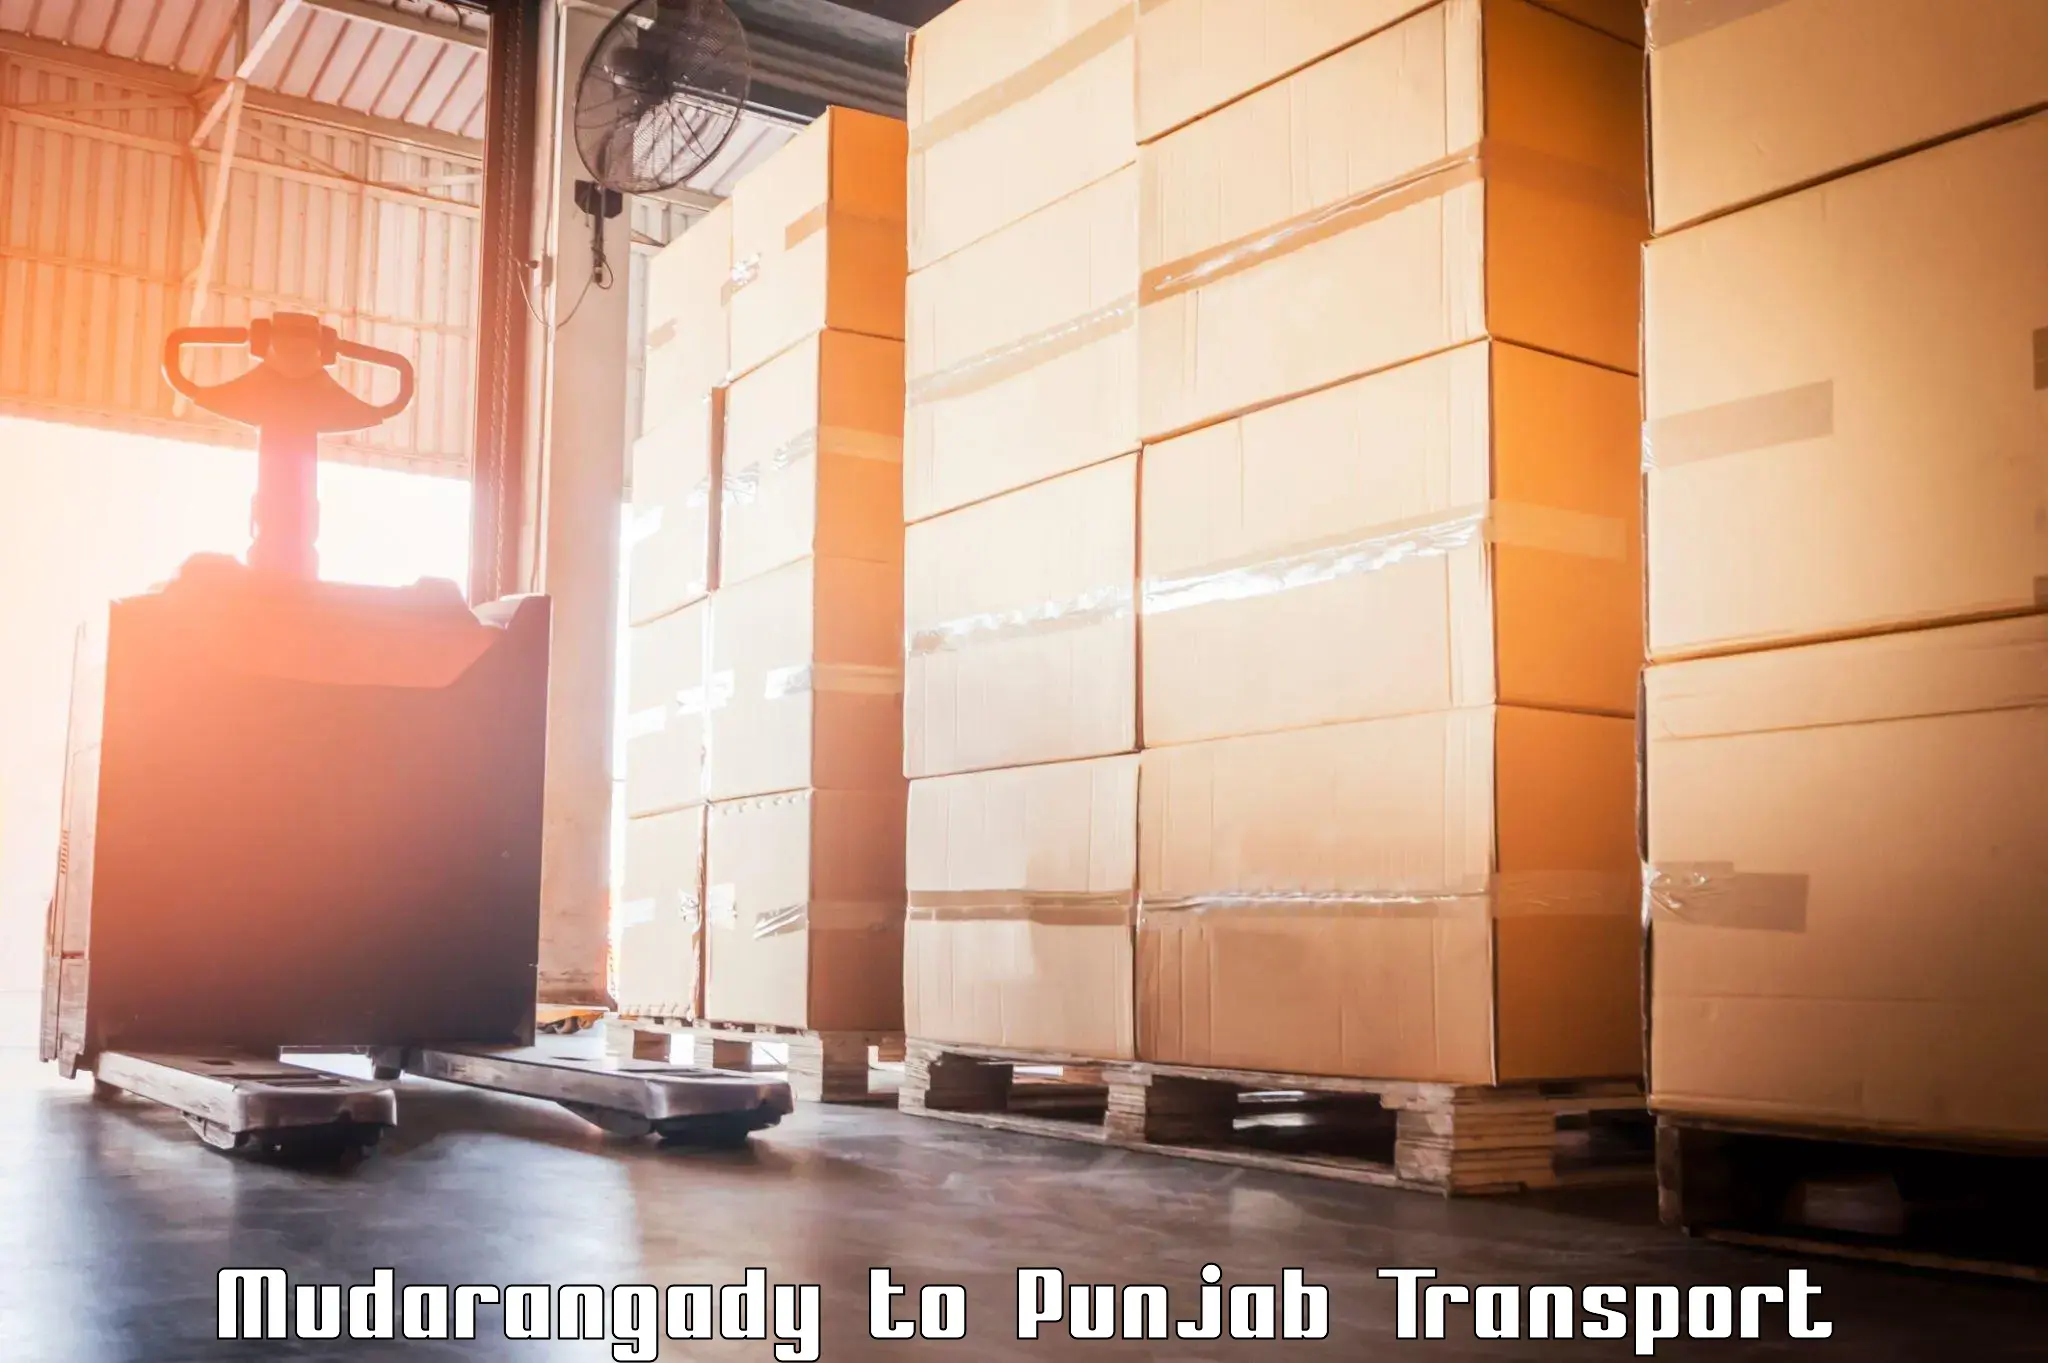 Transport in sharing Mudarangady to Central University of Punjab Bathinda